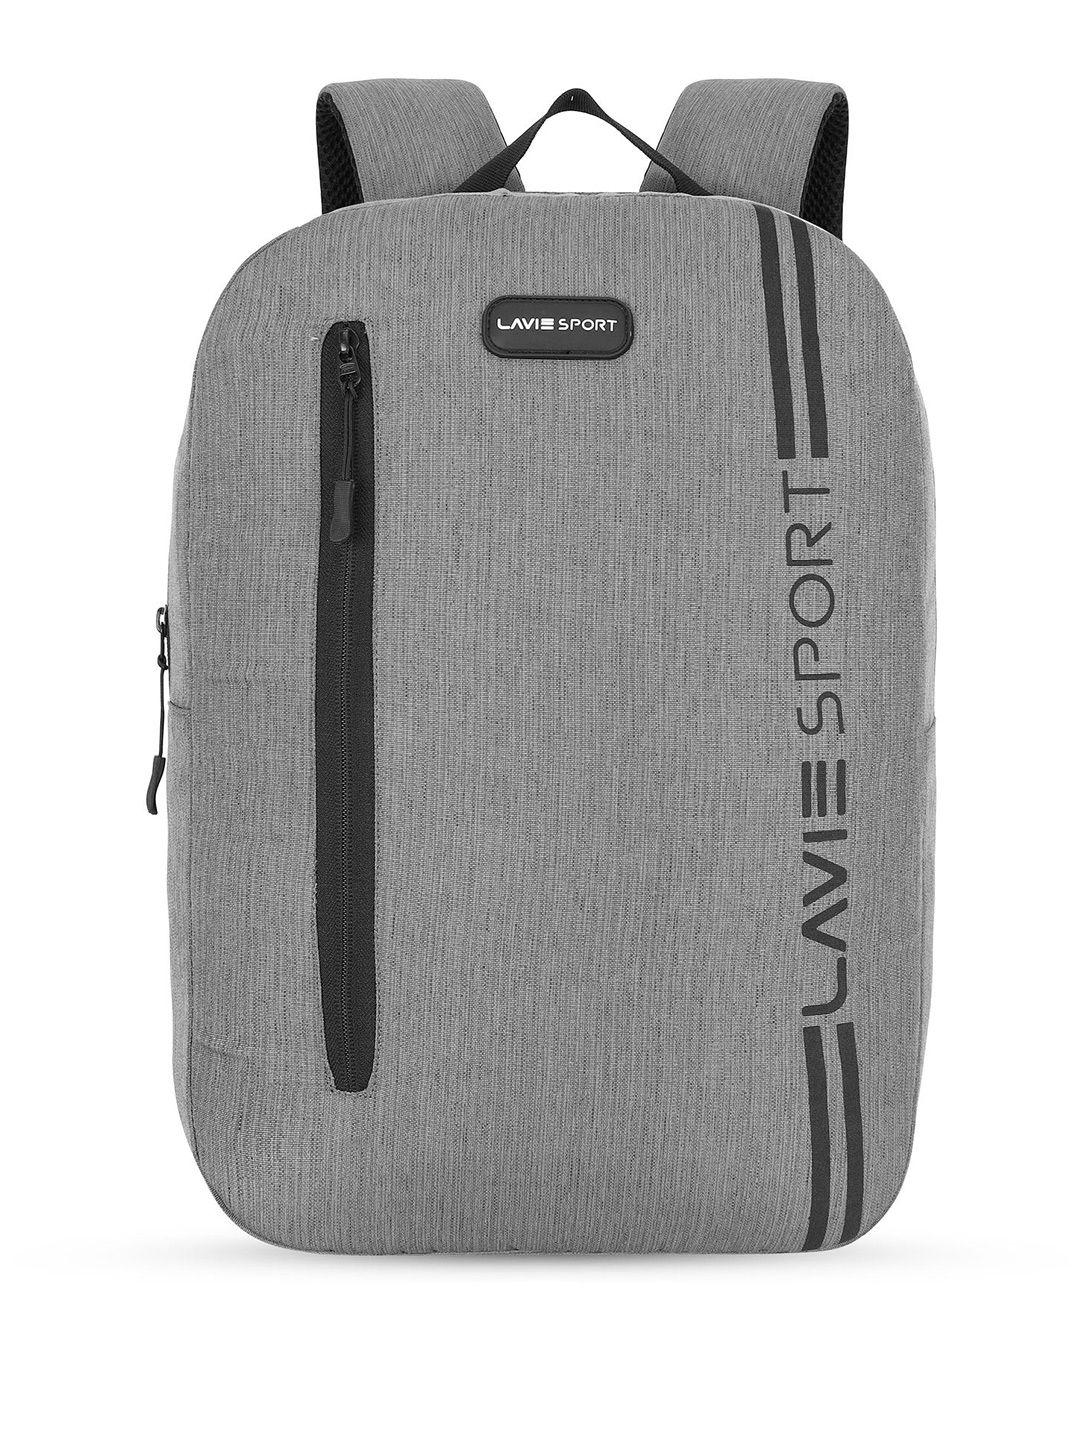 lavie sport brand logo hike backpack